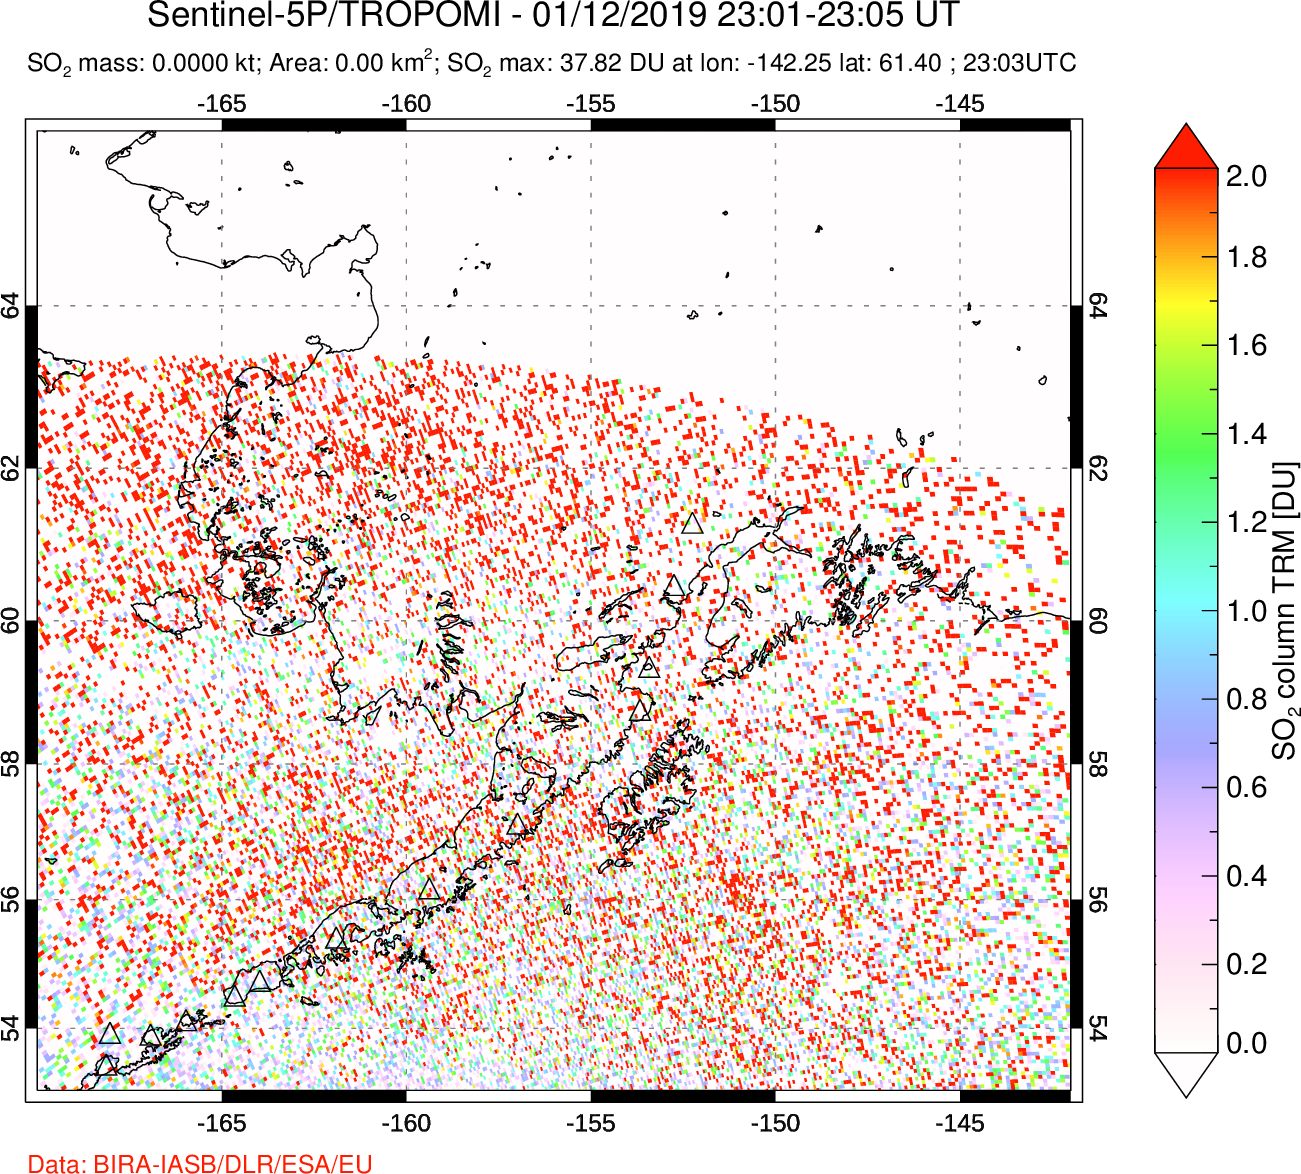 A sulfur dioxide image over Alaska, USA on Jan 12, 2019.